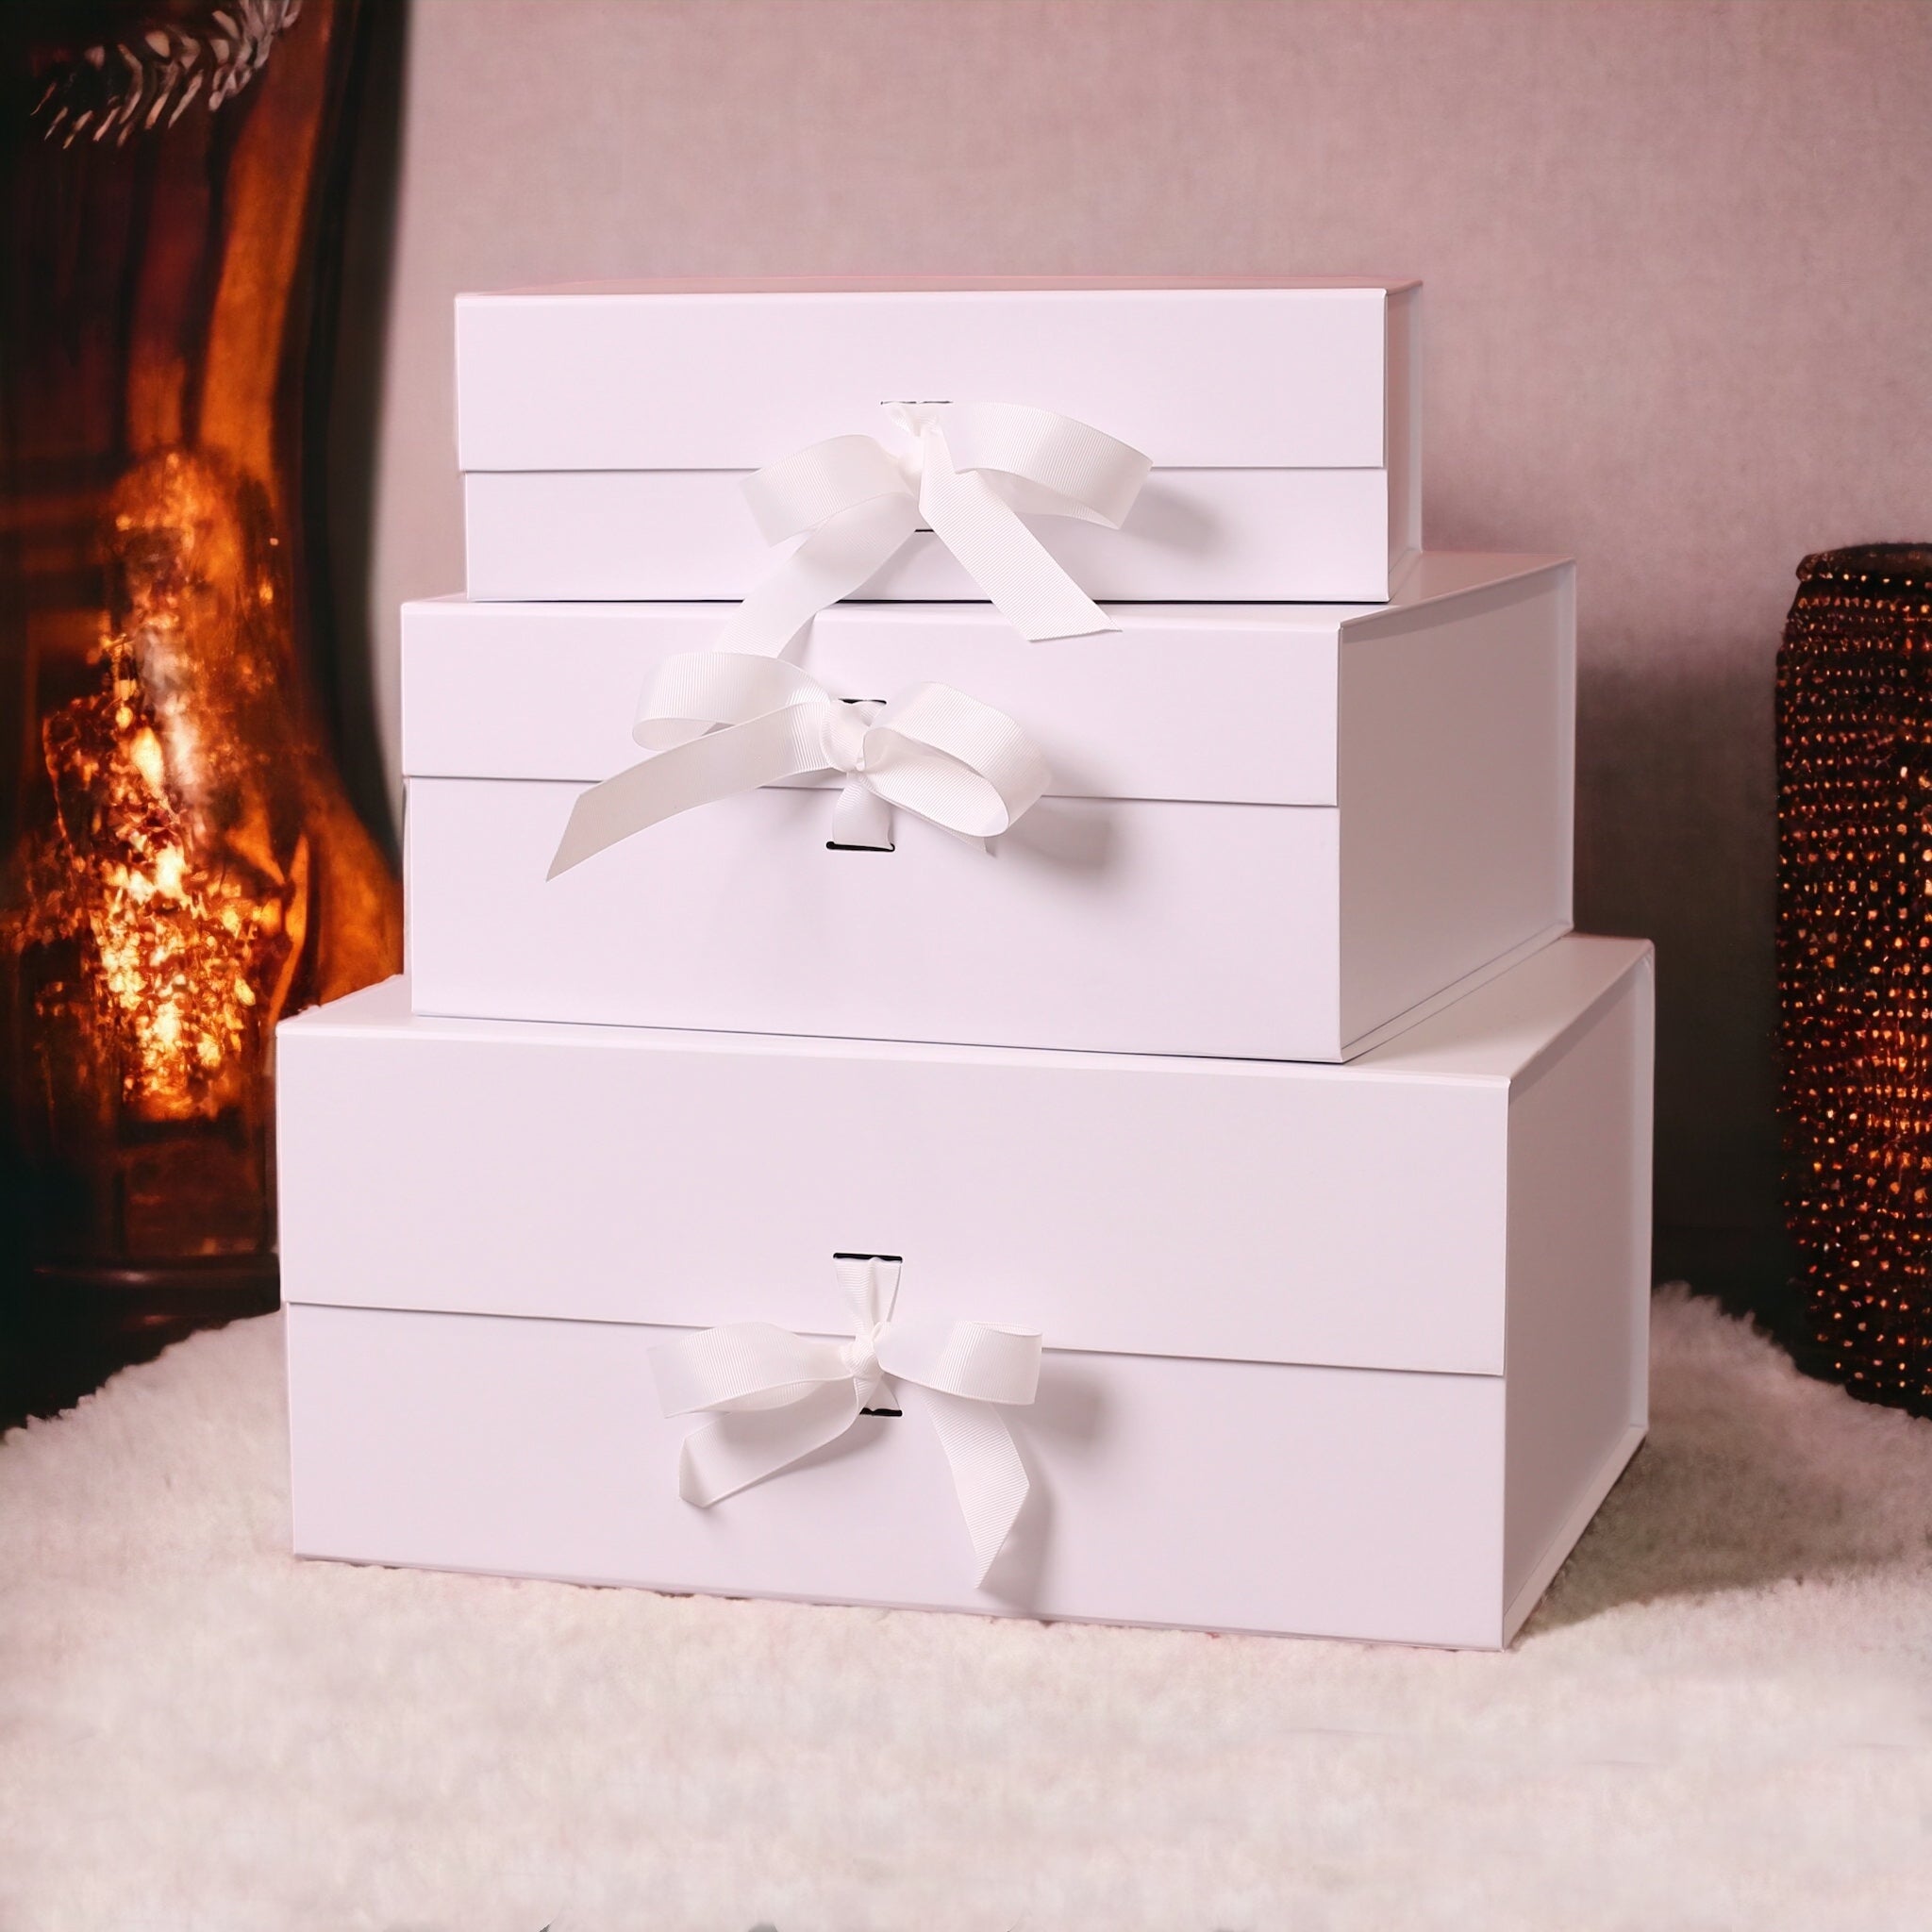 White Wine Gift Box: Pinot Grigio & Chocs!